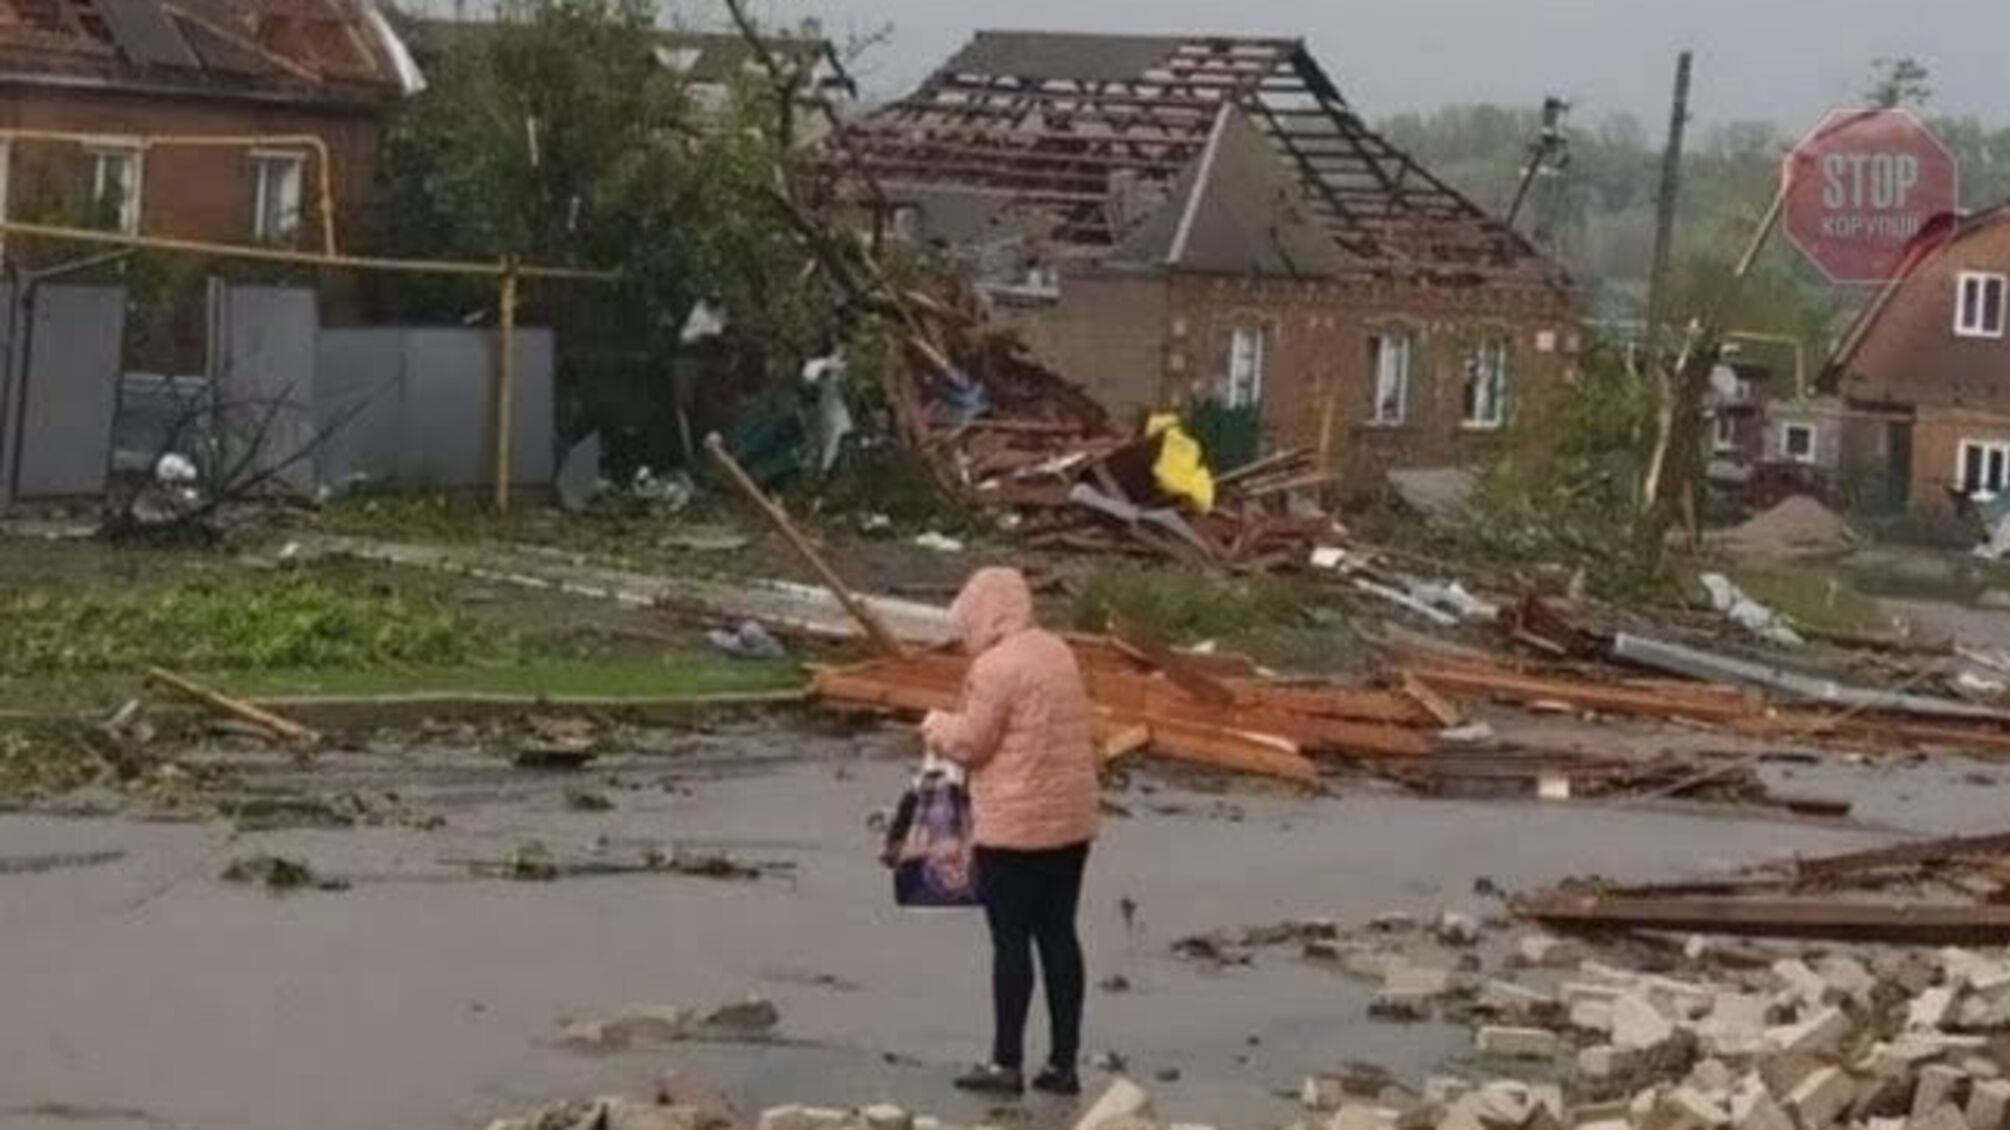 Негода в Україні: знеструмлено понад 40 населених пунктів